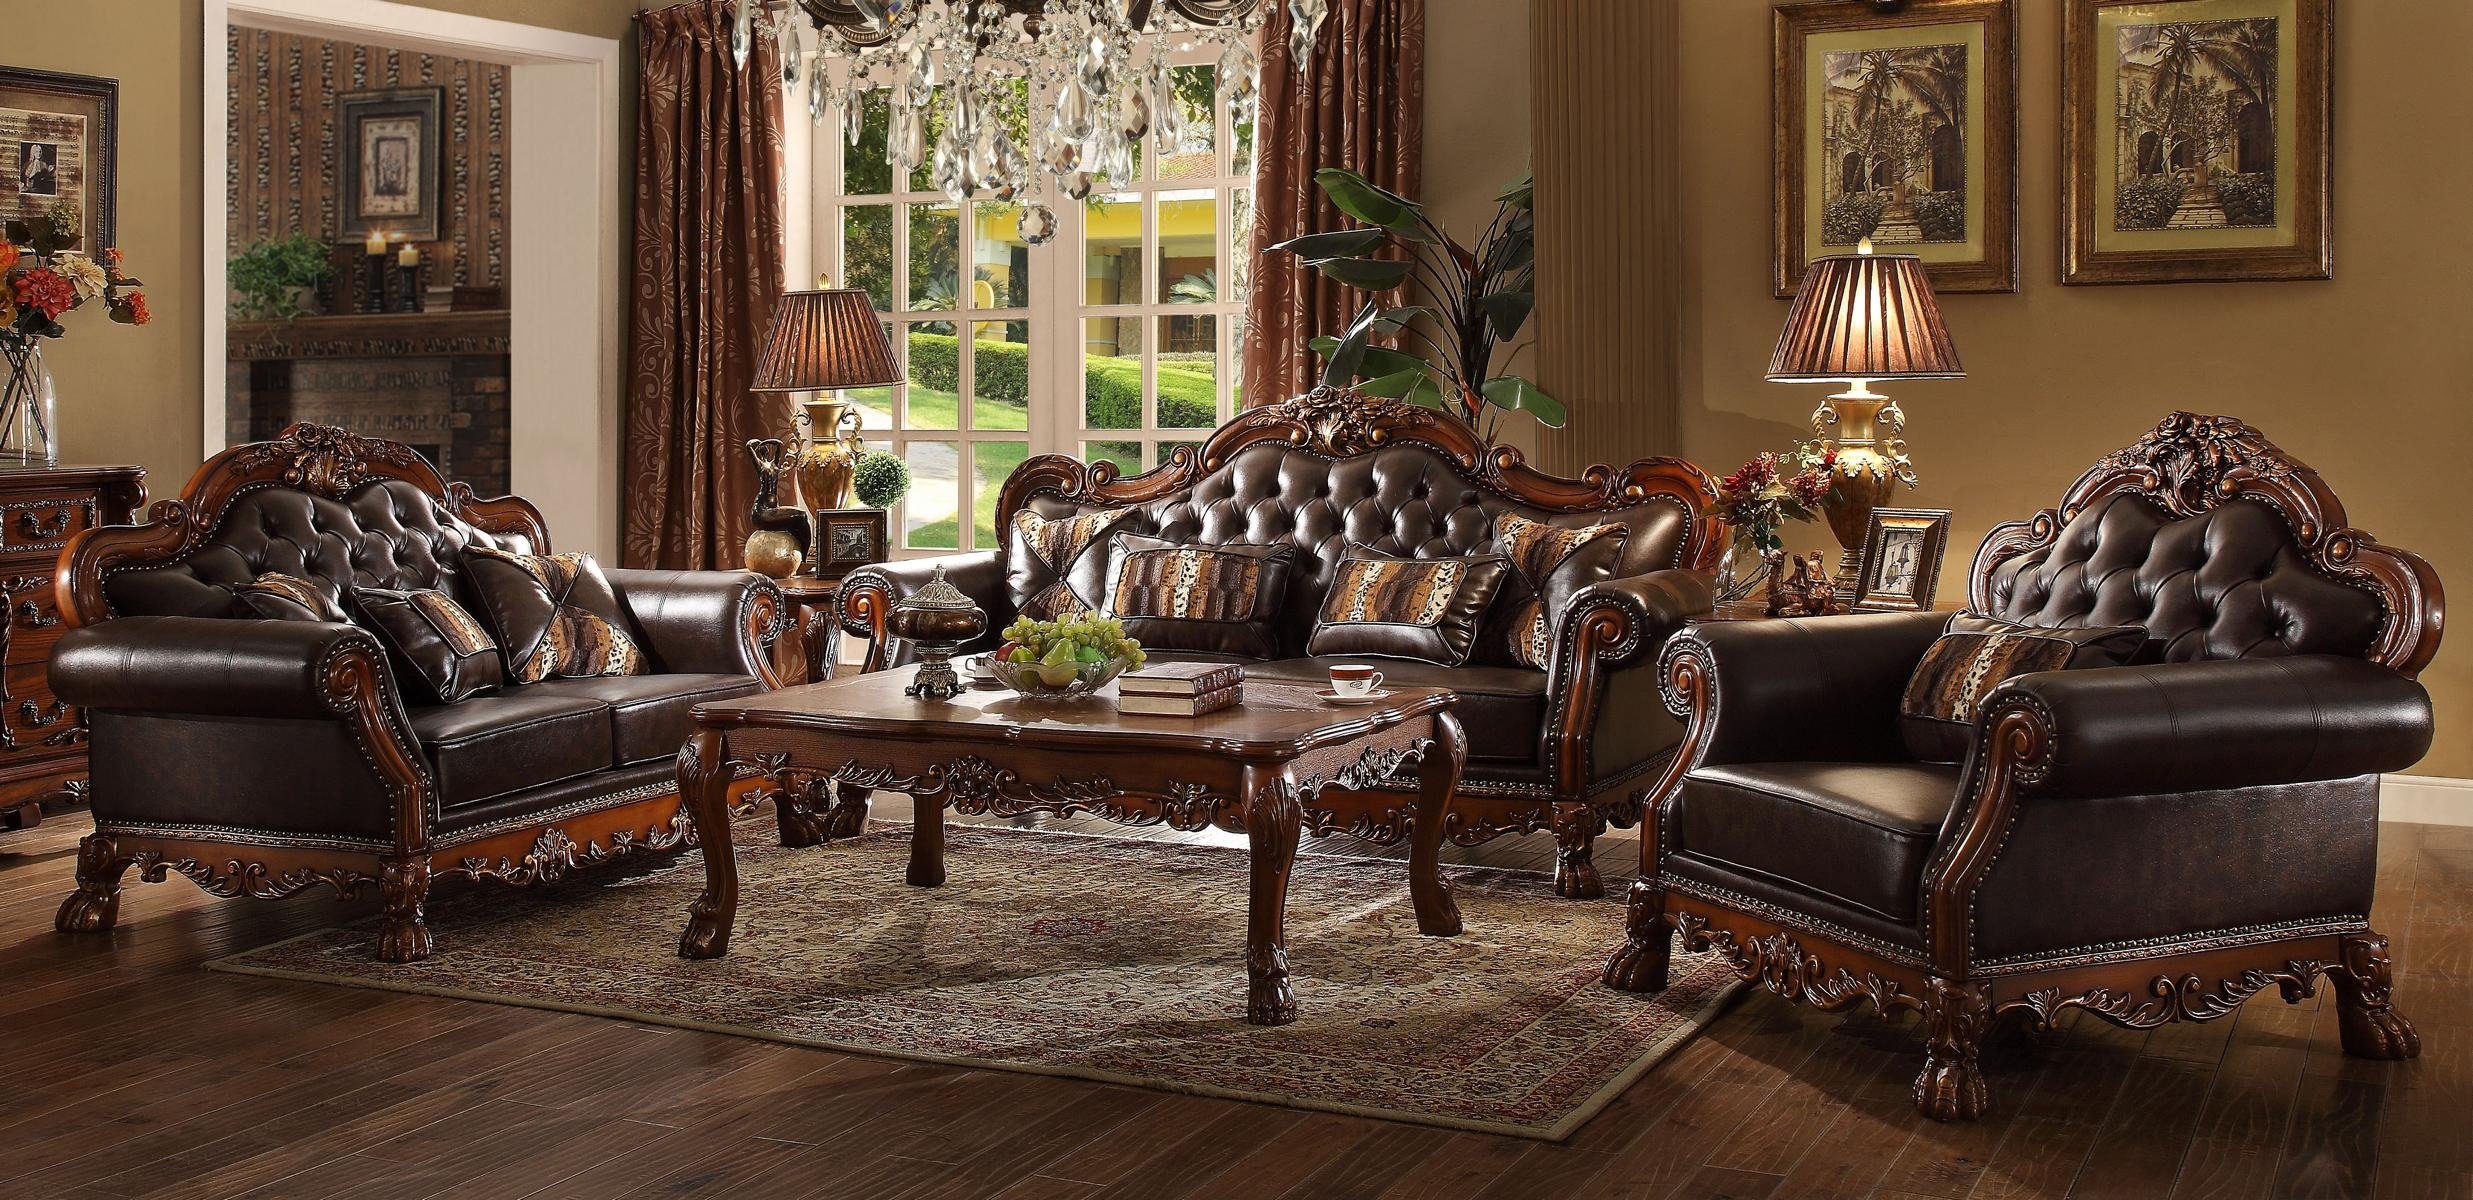 JVmoebel Wohnzimmer-Set, Luxus Chesterfield Sofagarnitur 3+2+1 Sitzer mit Couchtisch Möbel